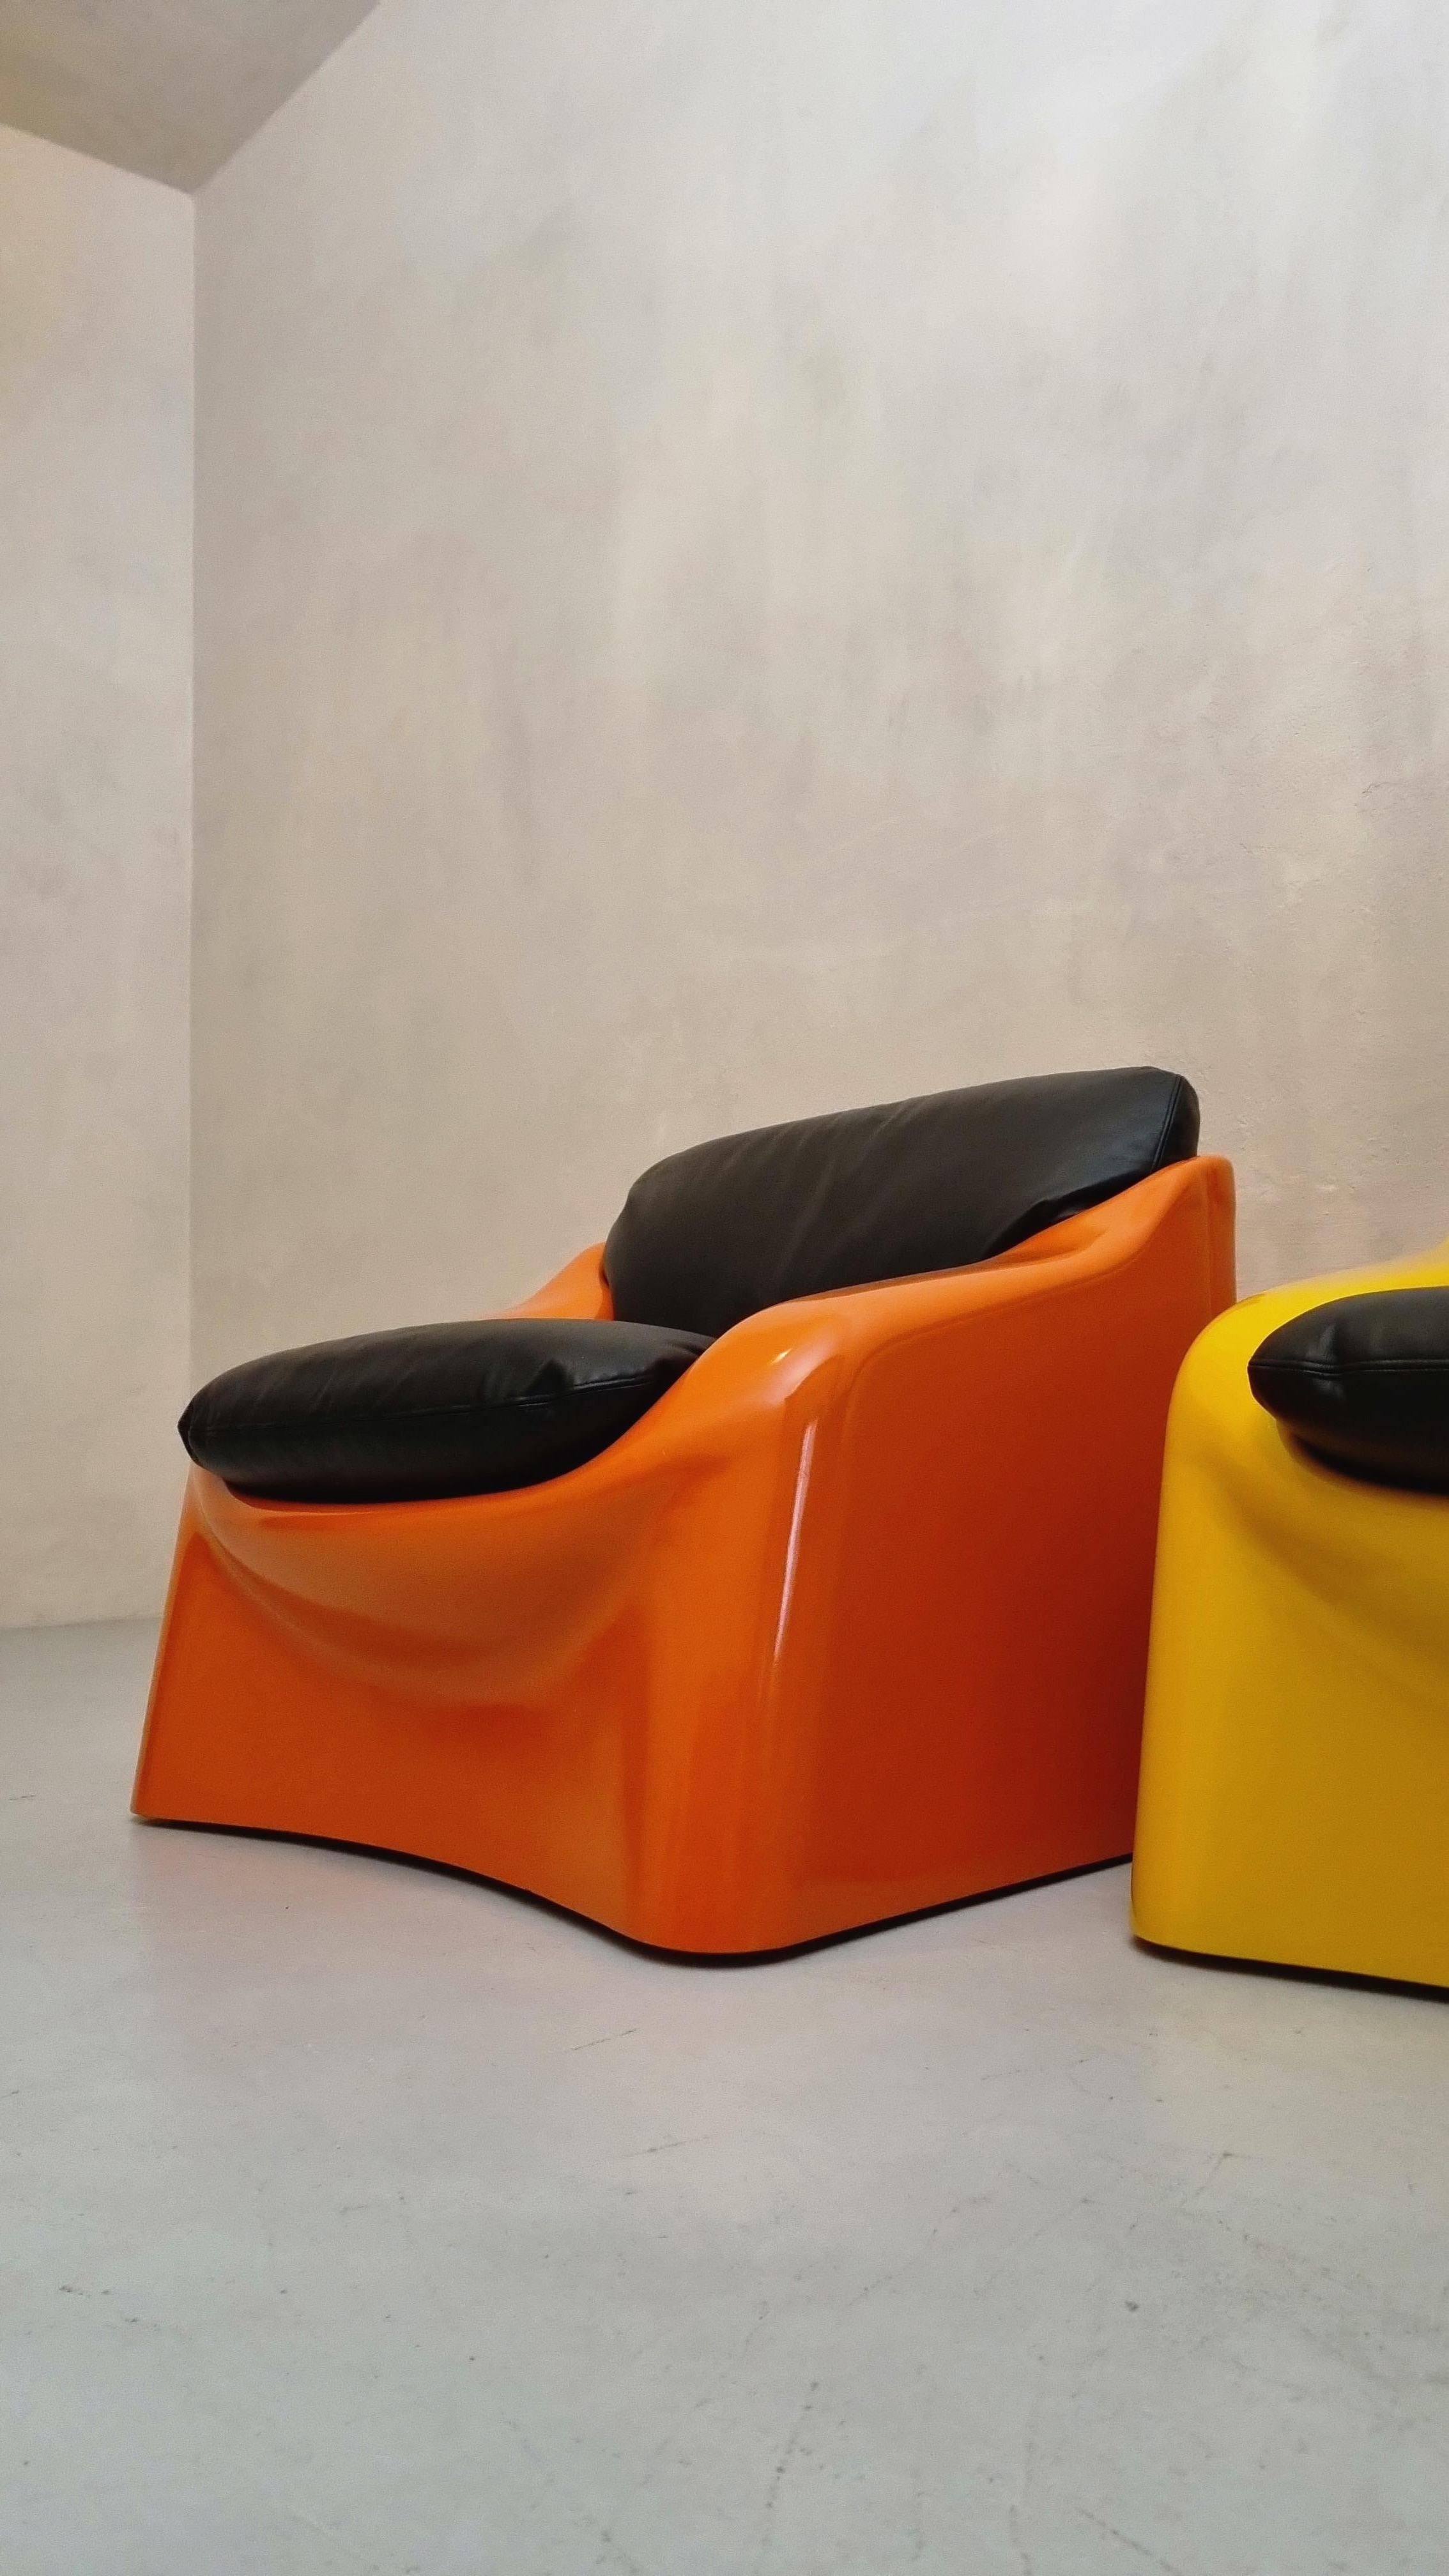 Zwei Sessel mod. Galassia entworfen von Ferdinando Buzzi für Ferruccio Brunati , 70er Jahre.
Struktur aus stoßfestem Polystyrol und Kunststoffbeschichtungen, Sitze aus Rindsleder.
Dieses seltene Sesselpaar, das in den 70er Jahren von Ferruccio